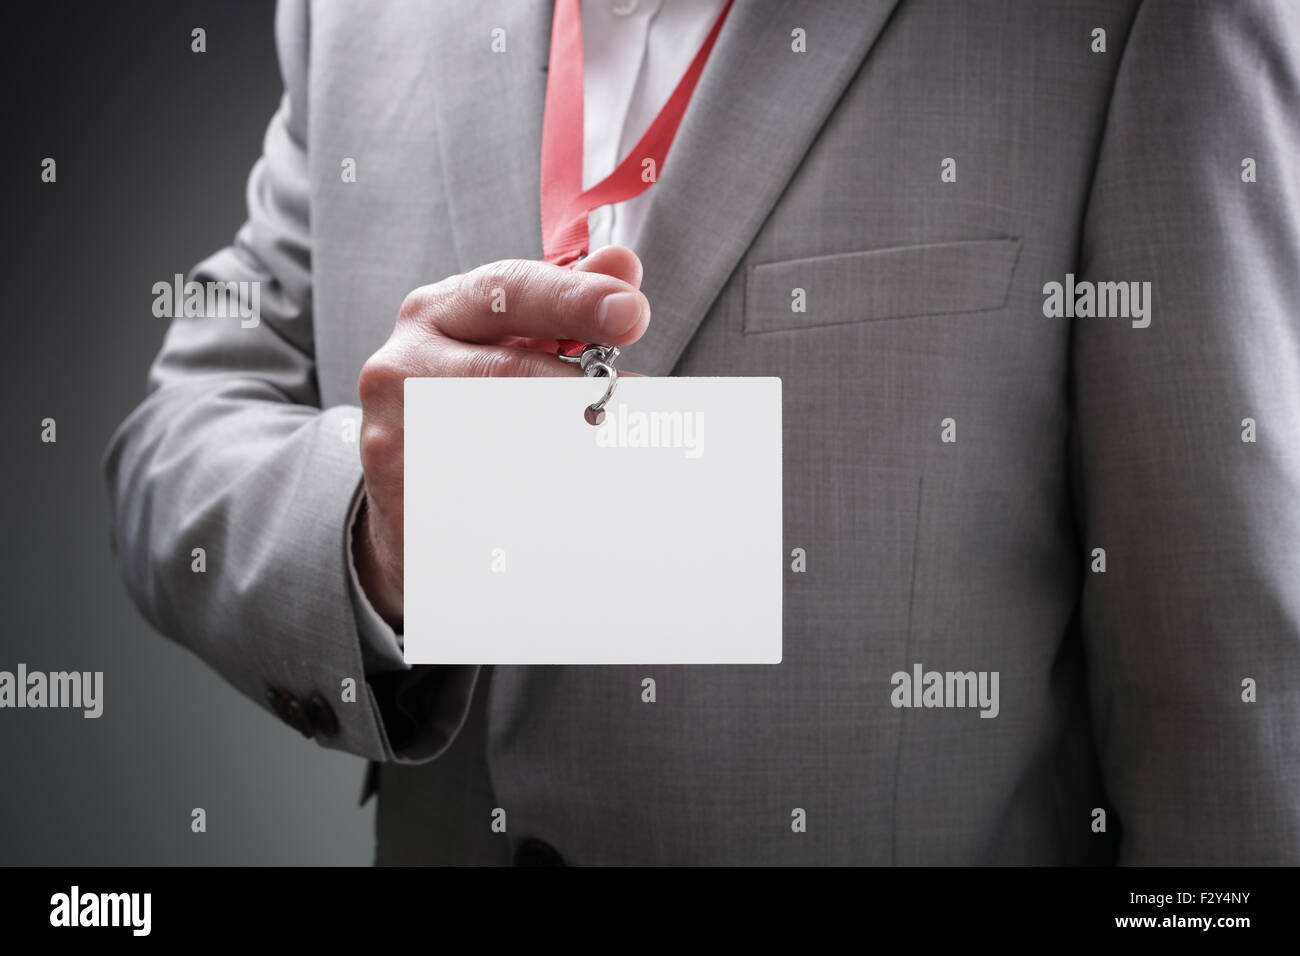 Empresario sosteniendo en blanco insignia de ID. Foto de stock